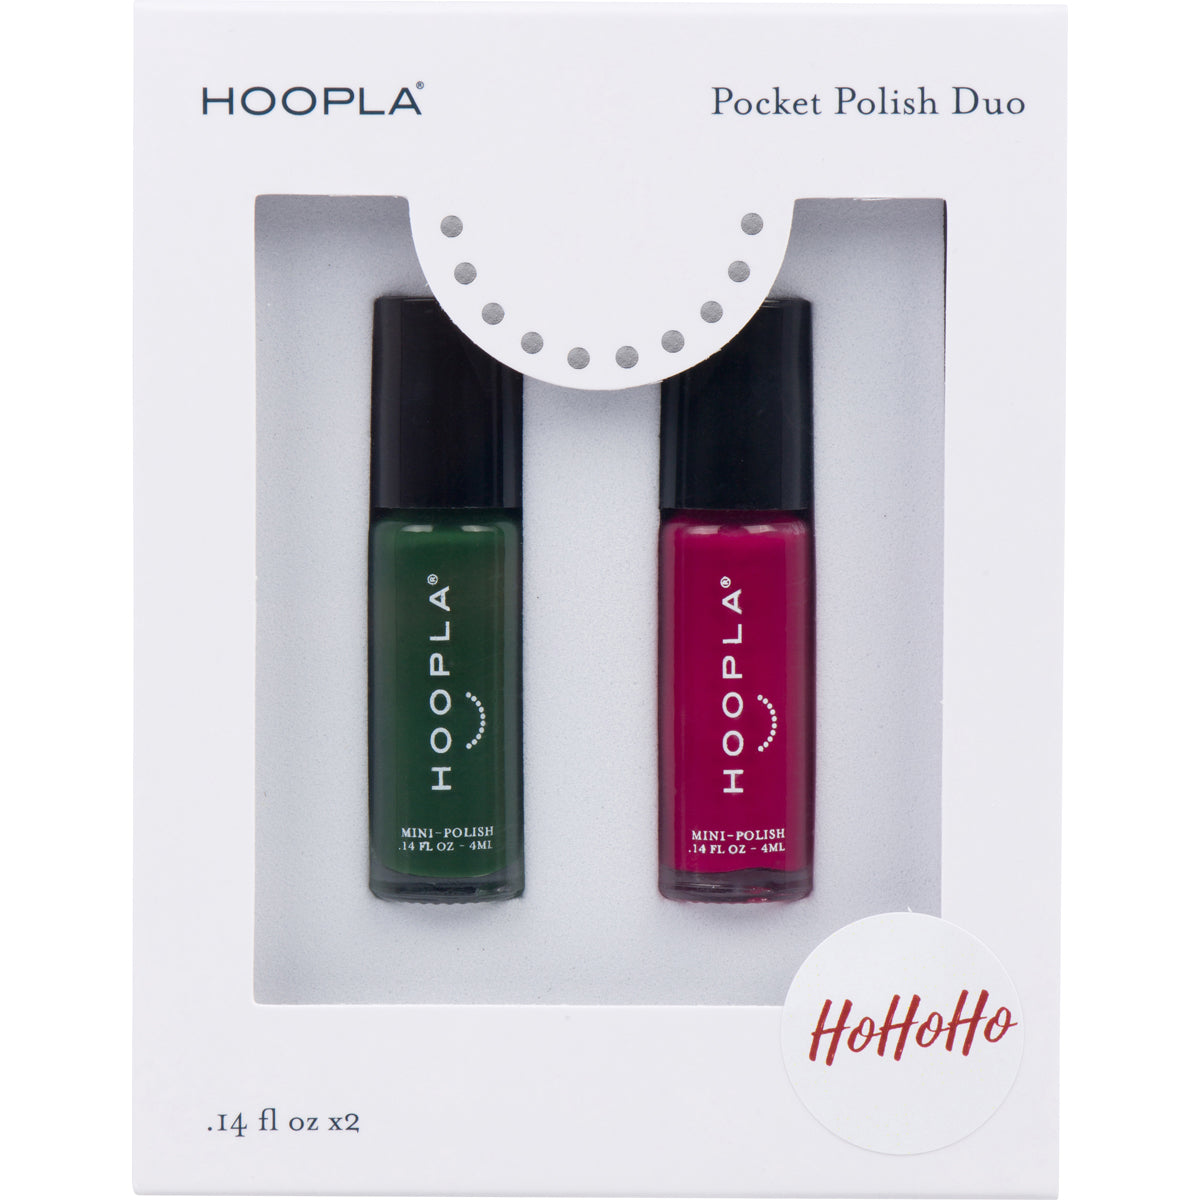 Pocket Polish Duo - HoHoHo